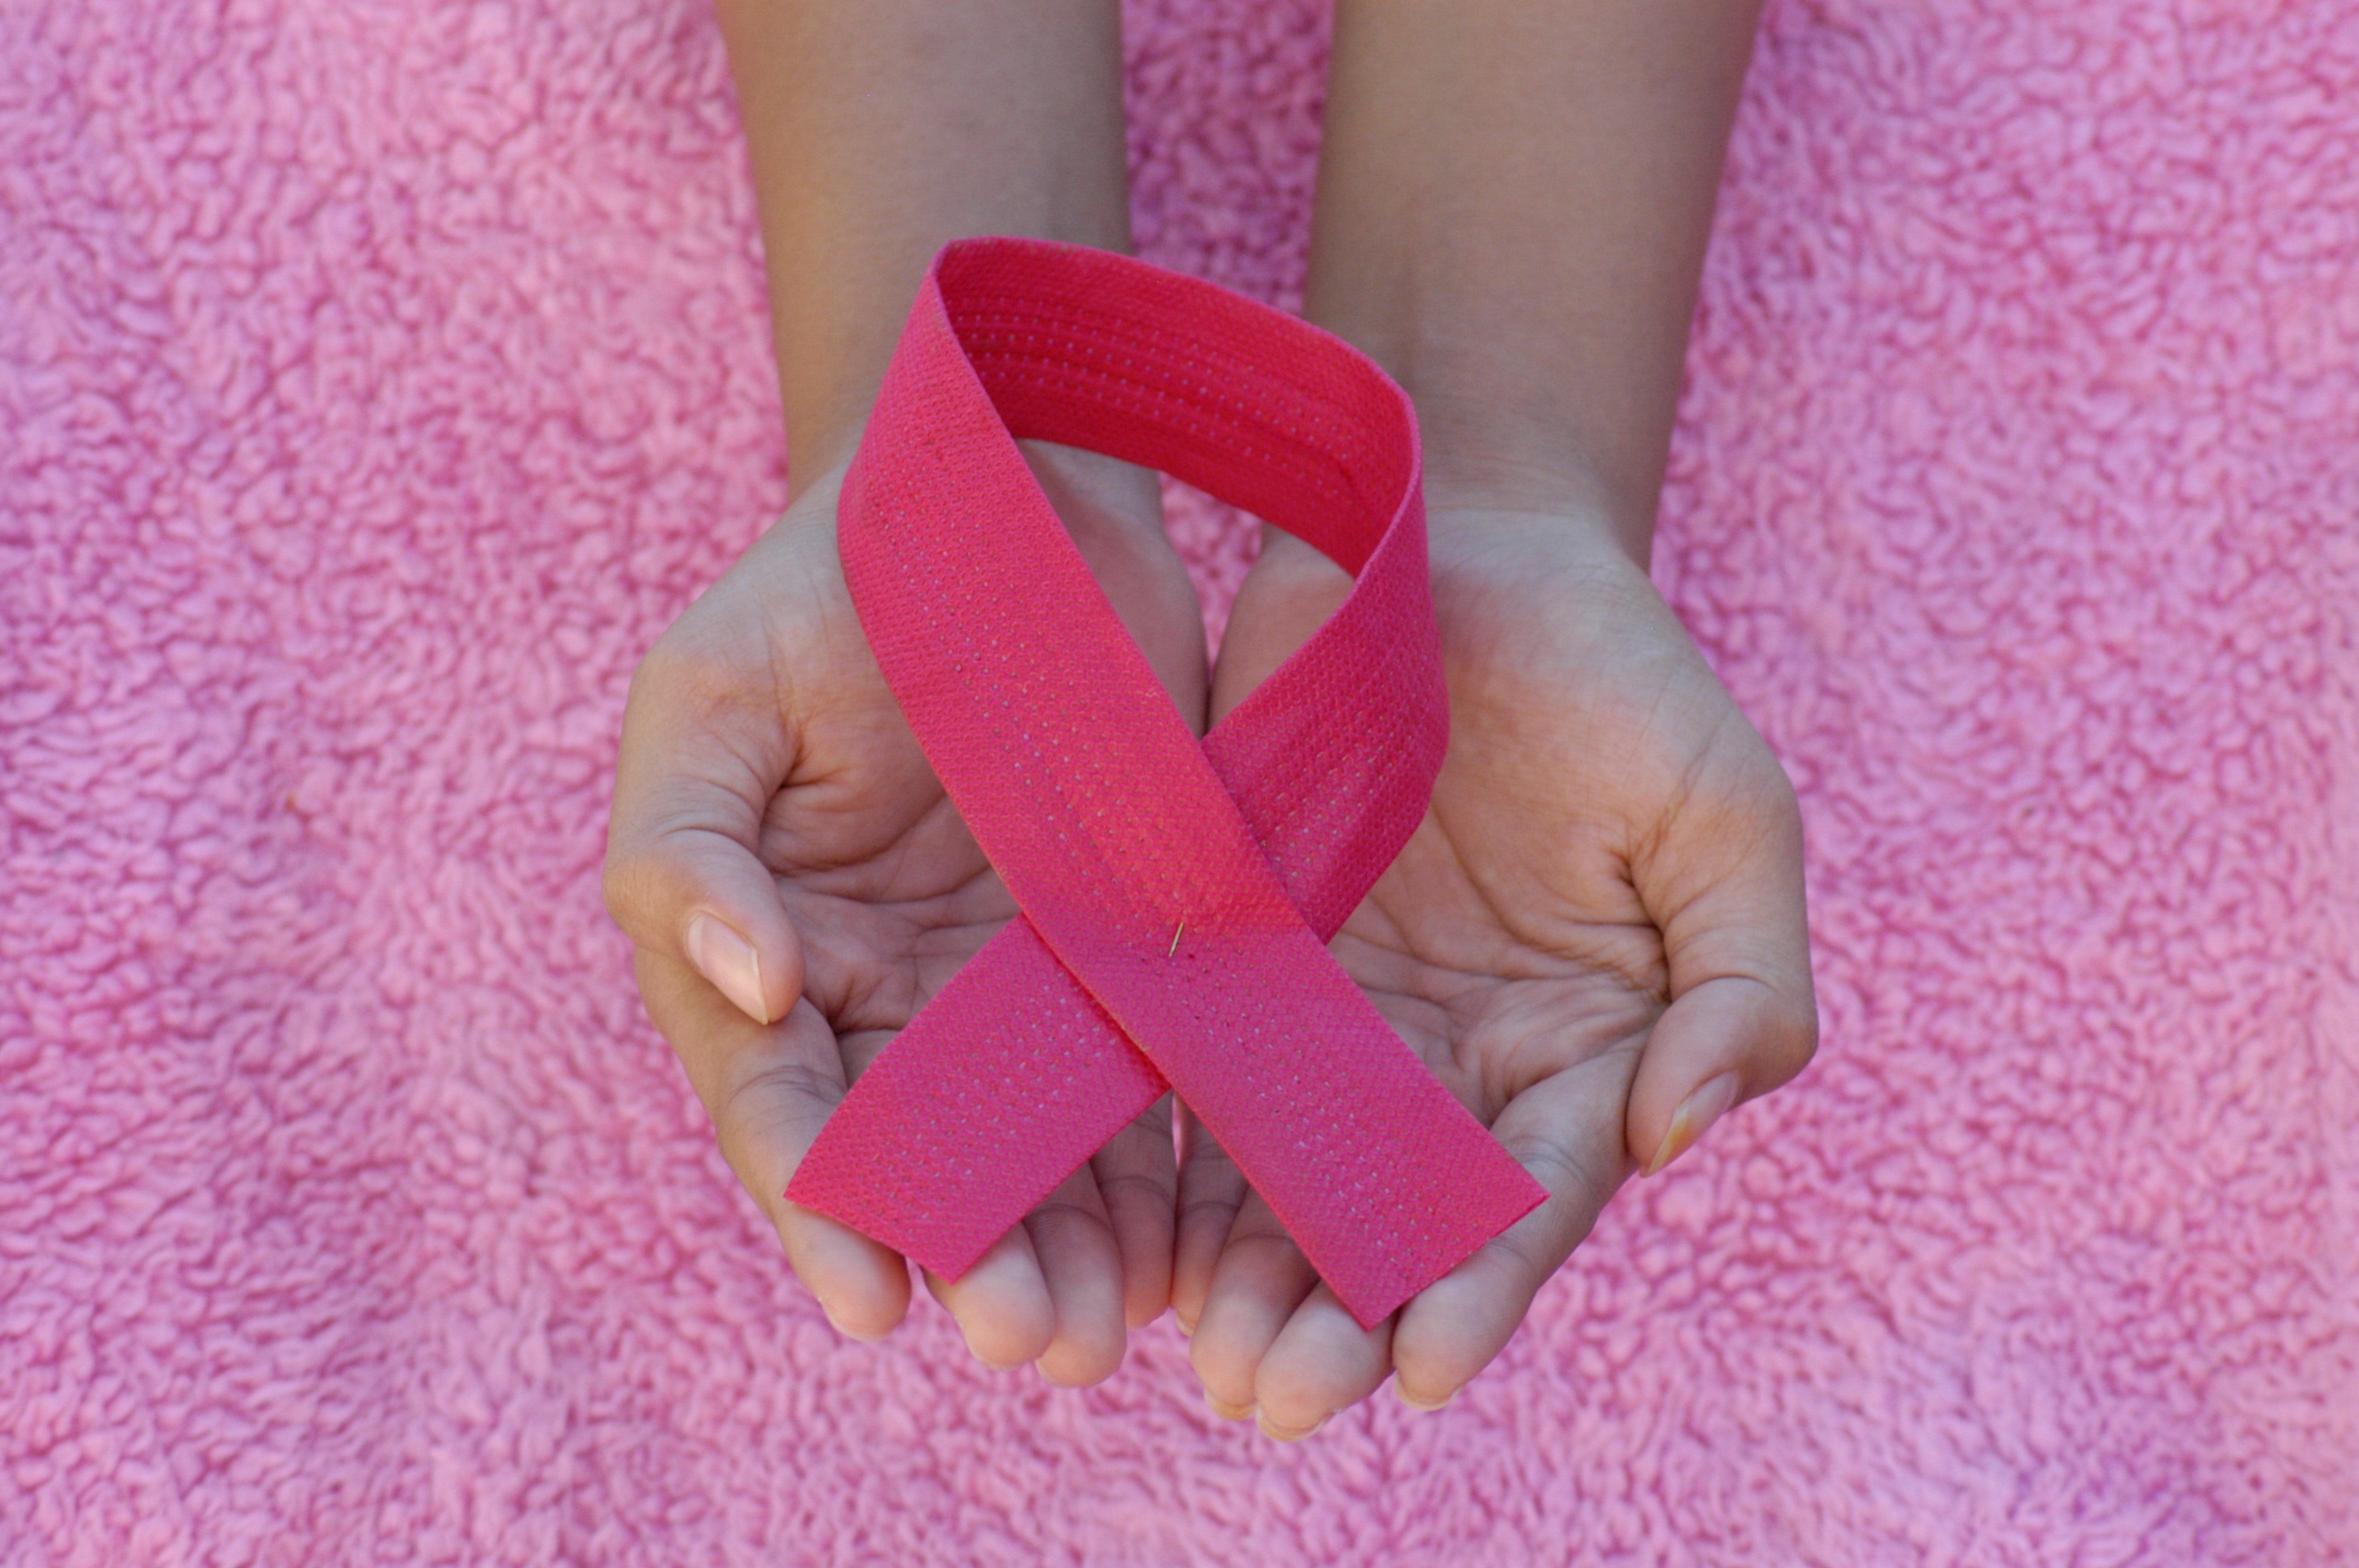 La supervivència al càncer de mama a 5 anys del diagnòstic frega el 90% a Catalunya